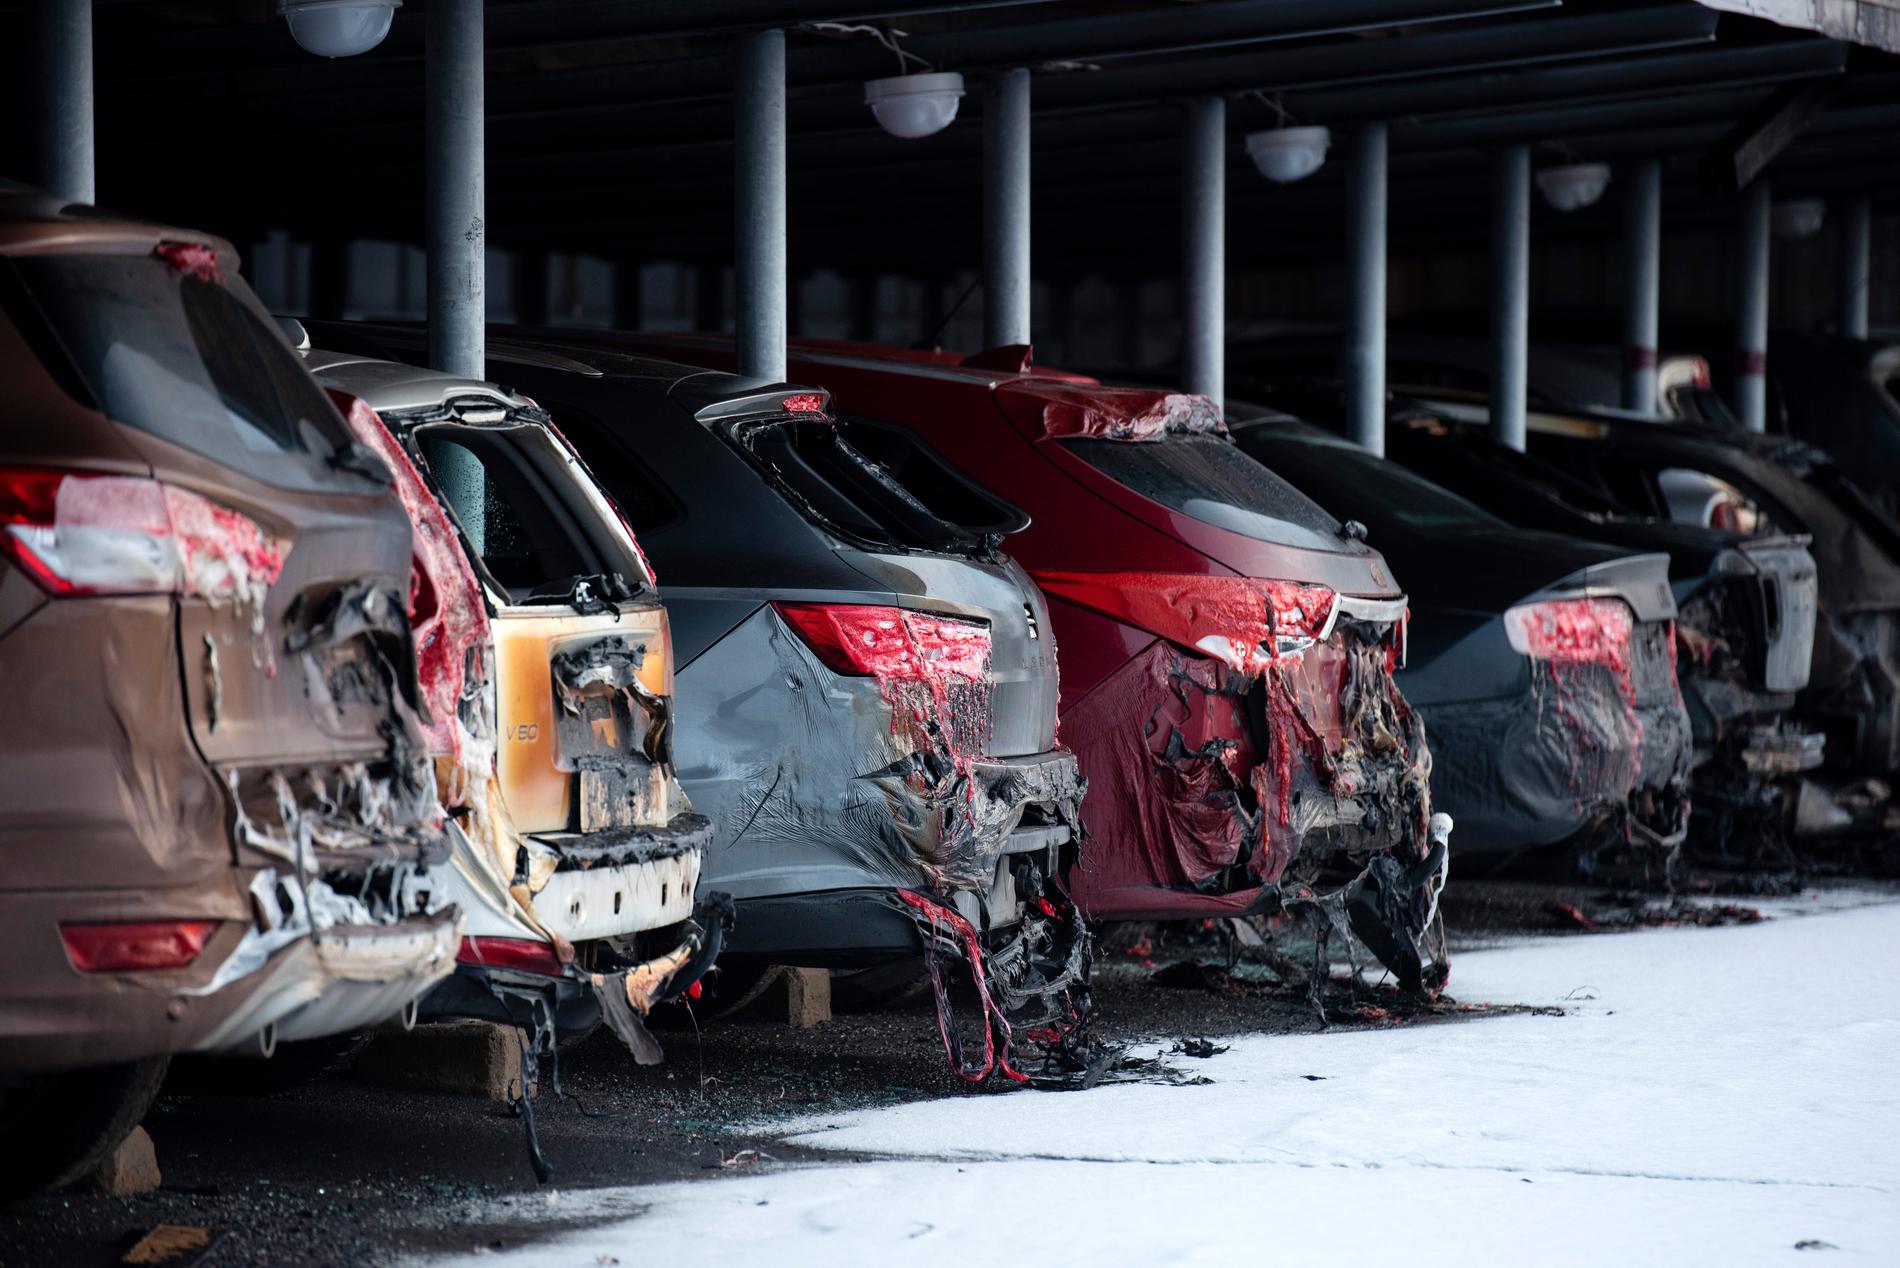 Uppemot 50 bilar förstördes eller skadades.